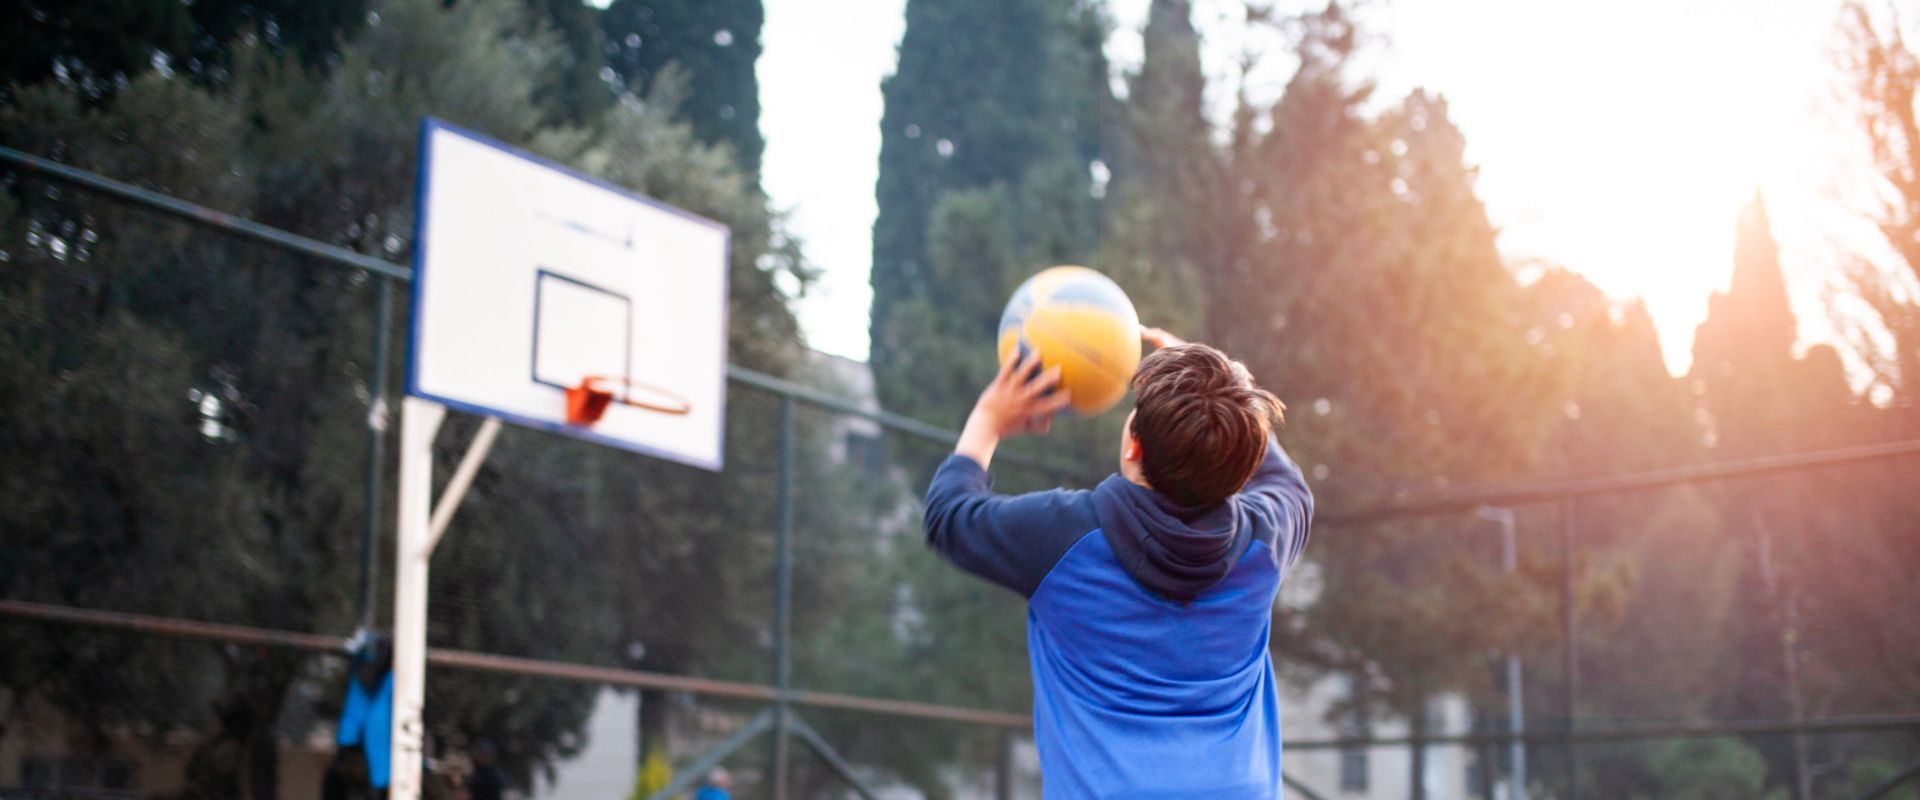 Mejores deportes para niños baloncesto